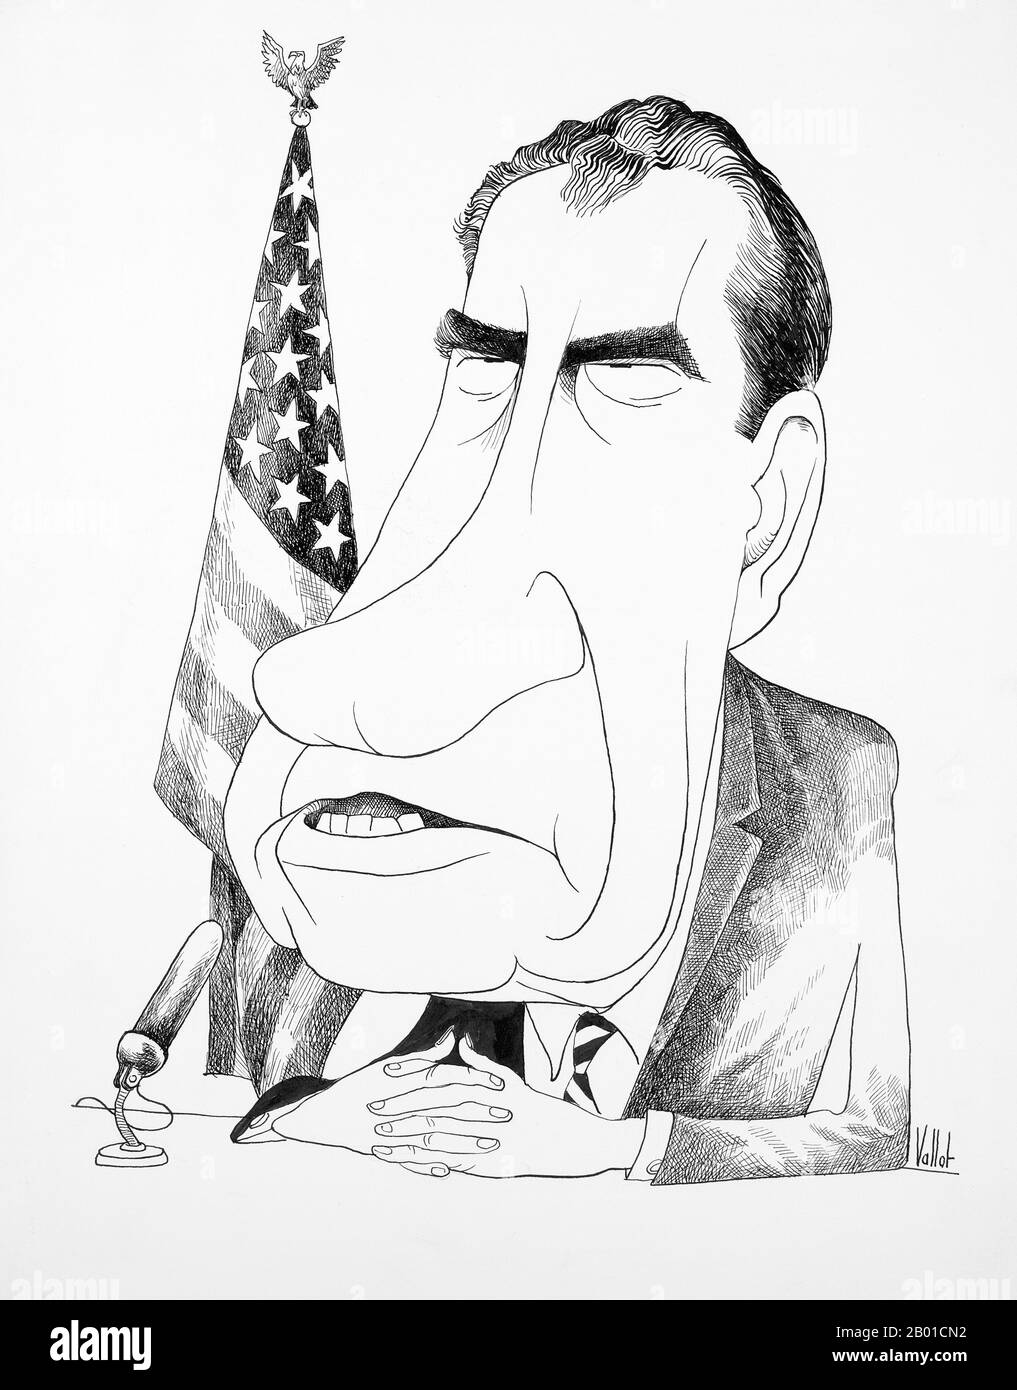 USA: Richard Nixon (9. Januar 1913 - 22. April 1994) mit gefalteten Händen, vor einem Mikrofon vor einer amerikanischen Flagge sitzend. Karikatur von Edmund Valtman (31. Mai 1914 - 12. Januar 2005, gemeinfrei), 1970. Richard Milhous Nixon war 37. Präsident der Vereinigten Staaten und diente von 1969 bis 1974. Nixon ist der einzige Präsident, der sein Amt niedergelegt hat. Nixon erbte den Vietnamkrieg von seinen Vorgängern Kennedy und Johnson. Das amerikanische Engagement in Vietnam war weit unpopulär; obwohl Nixon den Krieg dort zunächst eskalierte, setzte er sich anschließend dafür ein, die US-Beteiligung zu beenden. Stockfoto